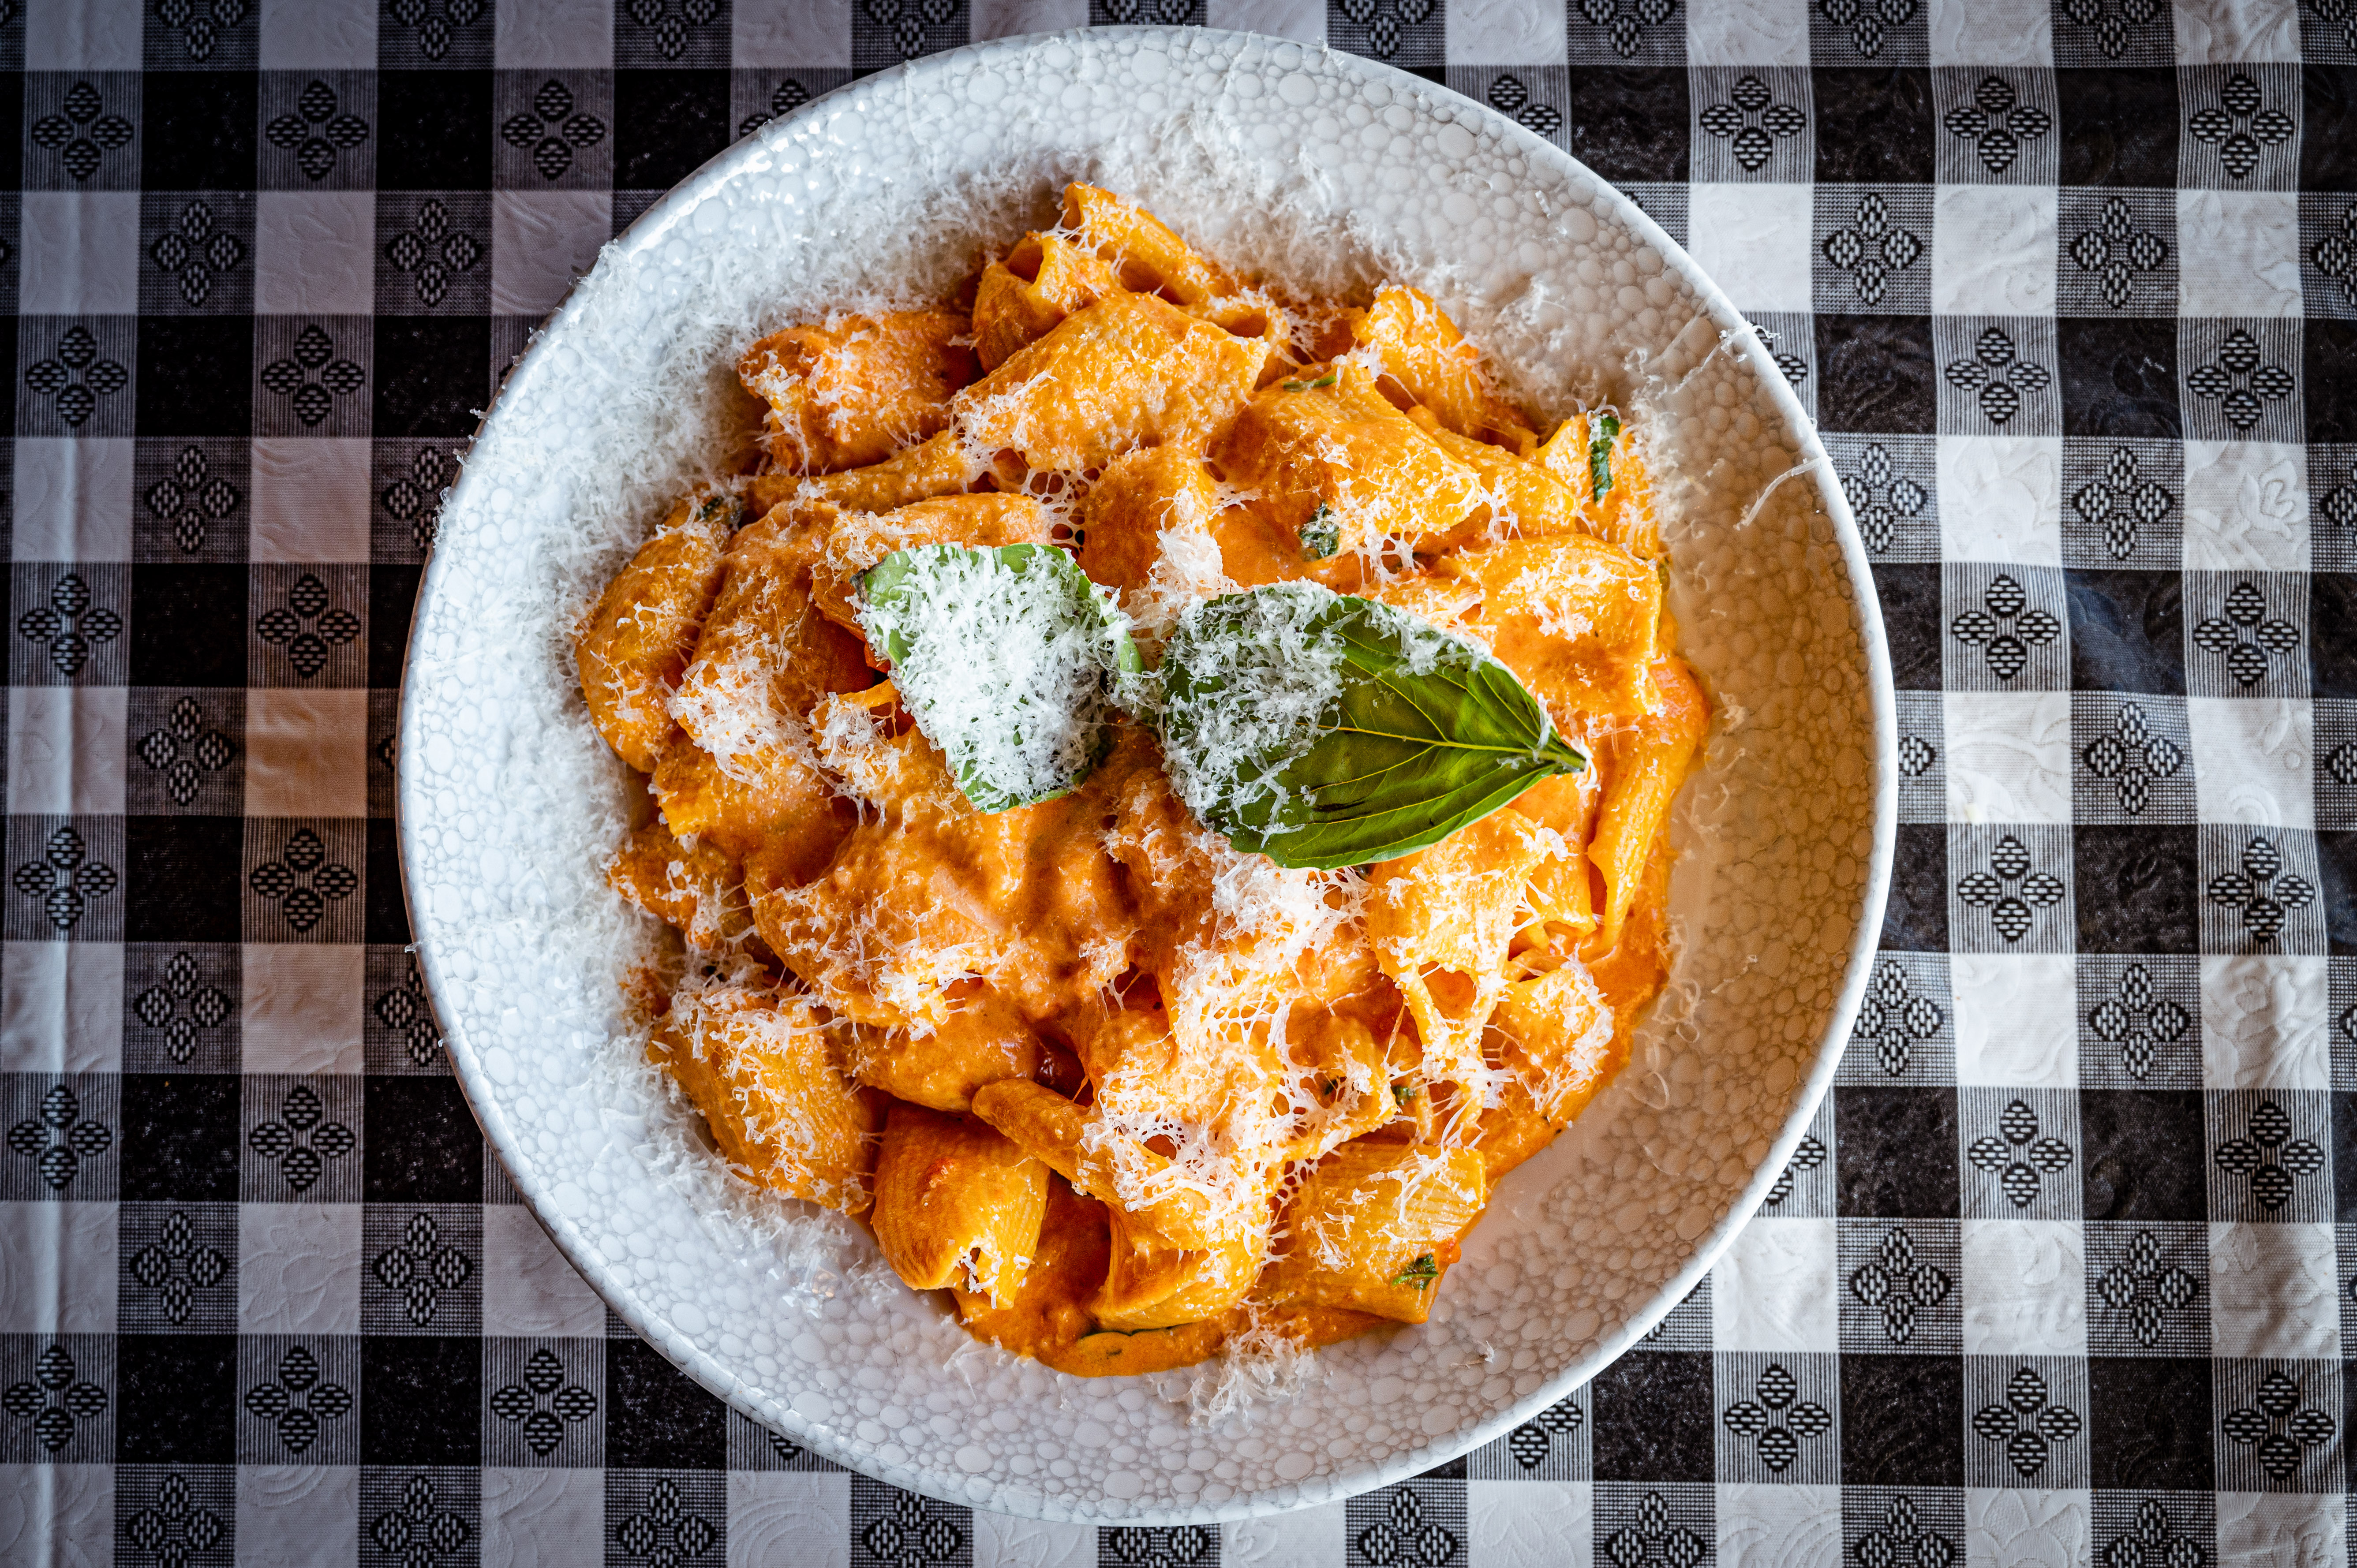 20 Best Restaurants In Little Italy That Aren't Tourist Traps